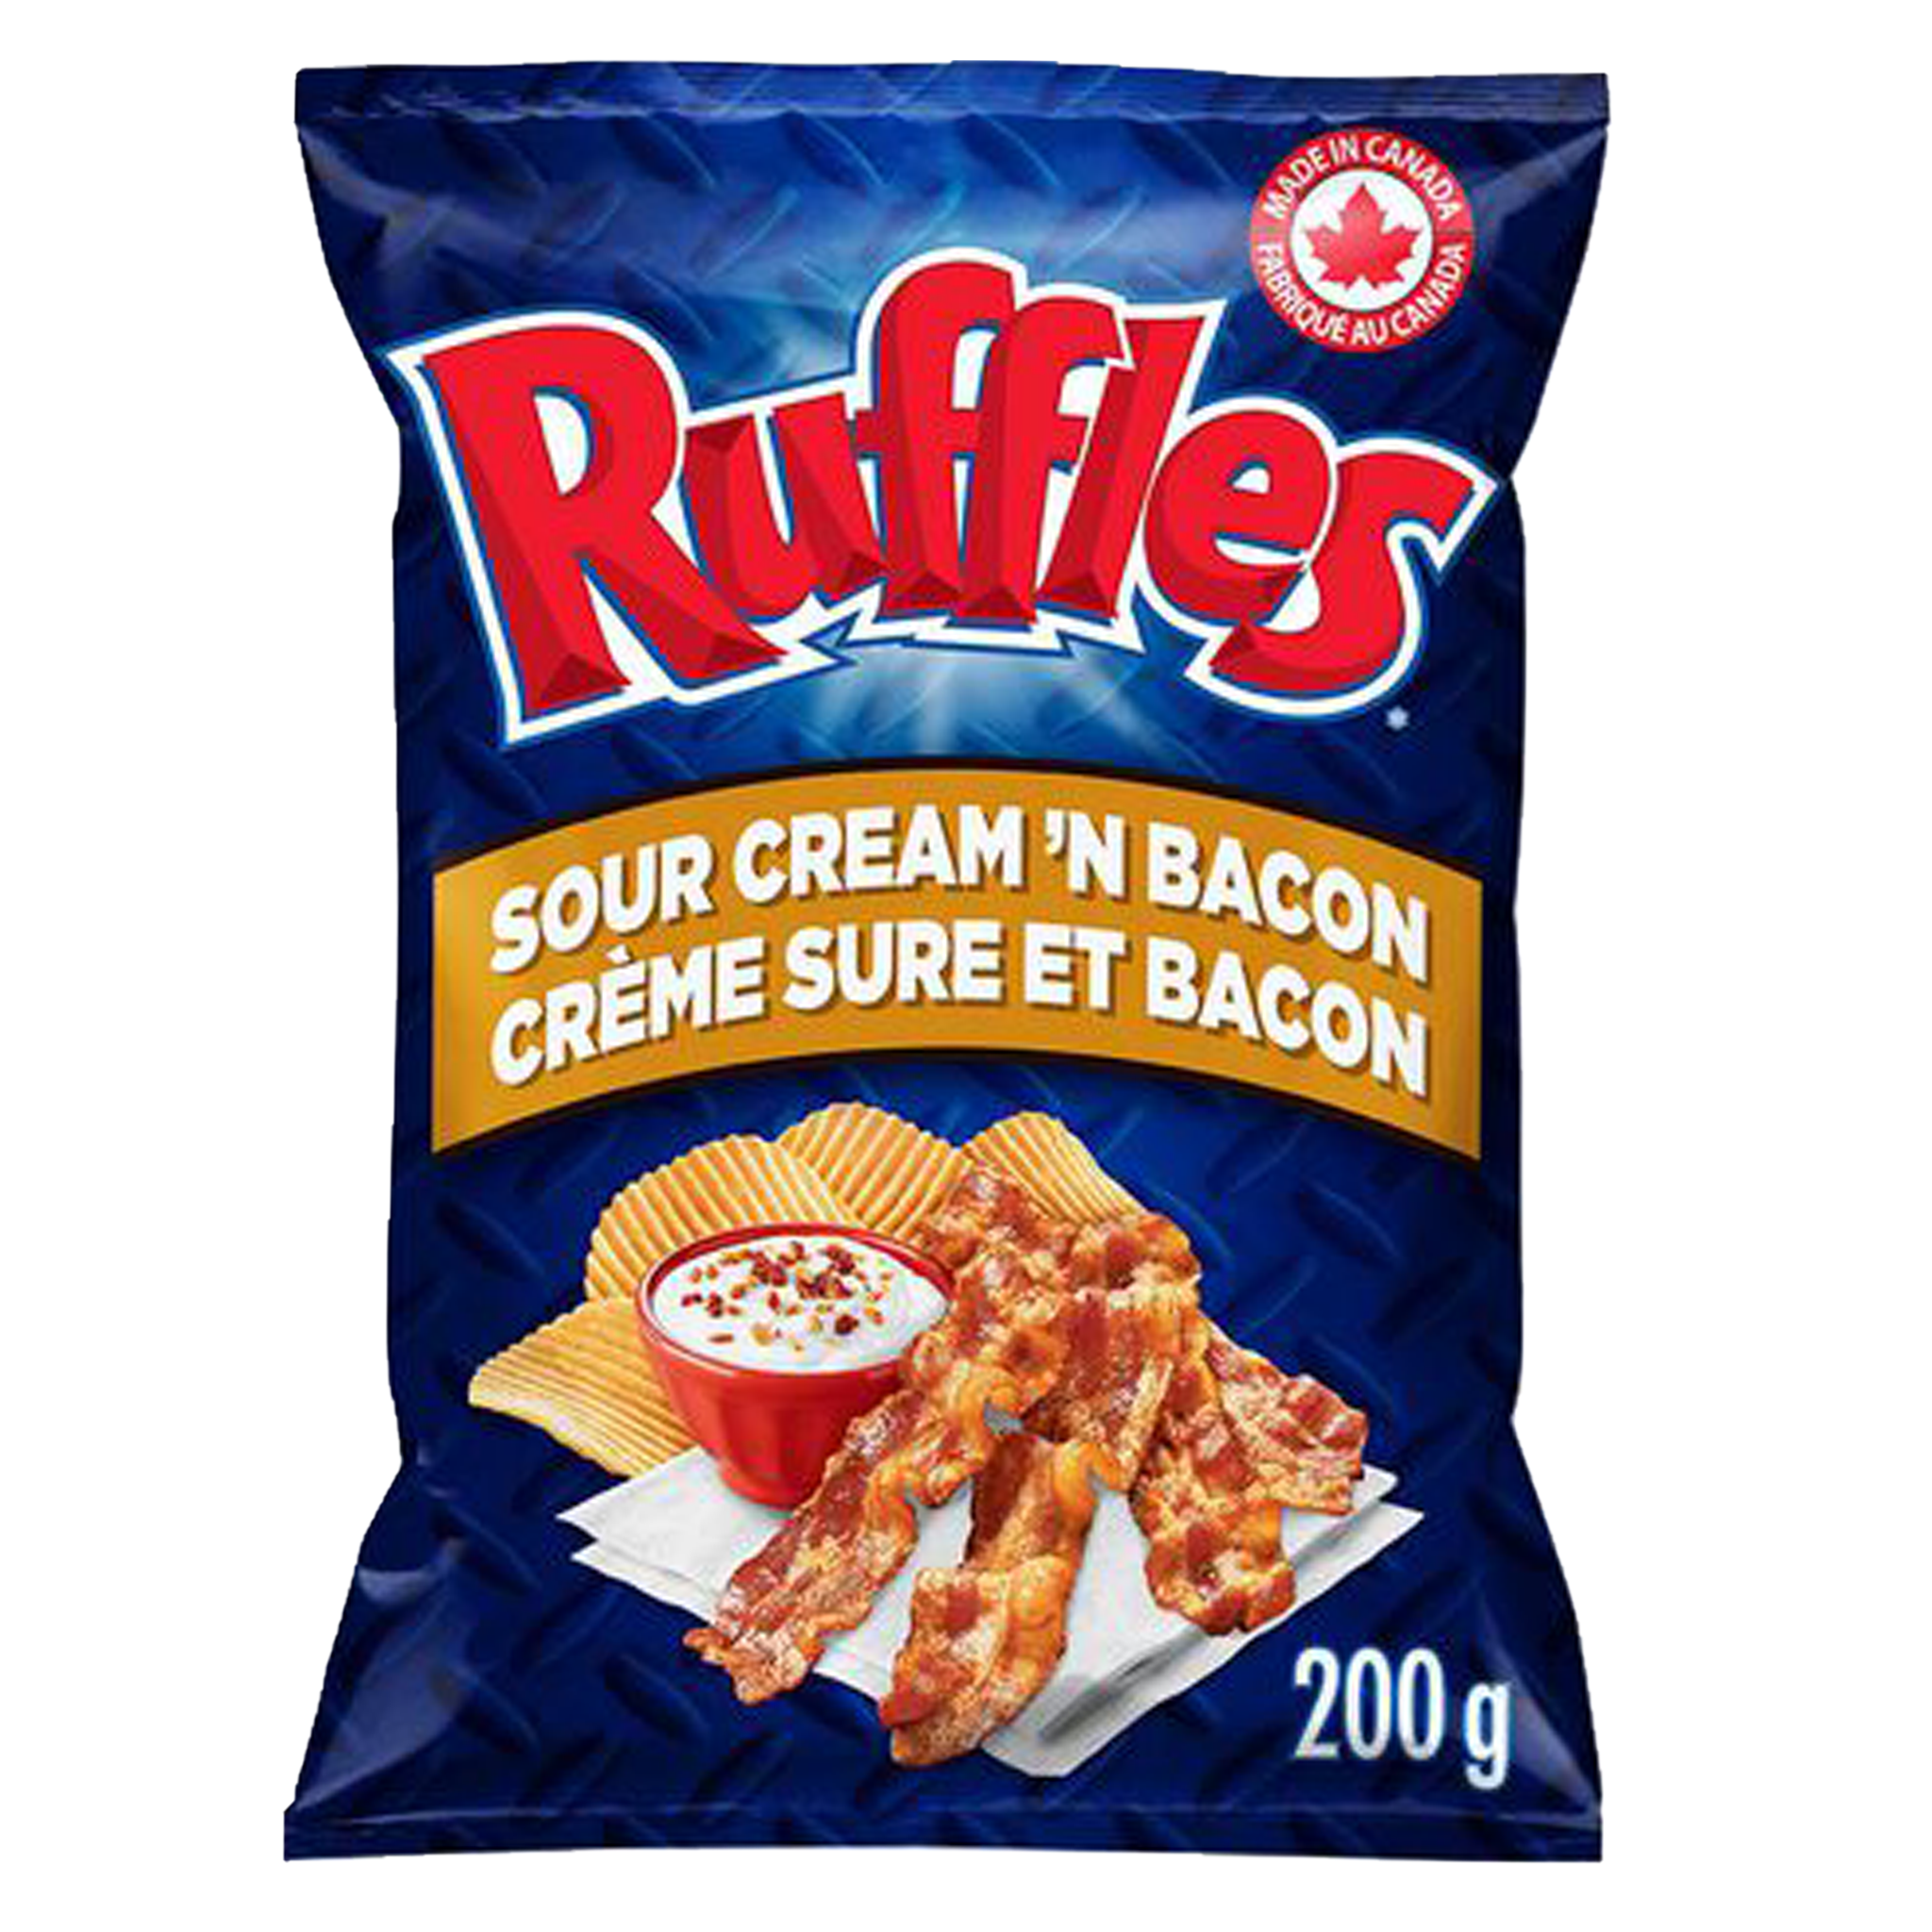 Ruffles - Sour Creme 'N Bacon